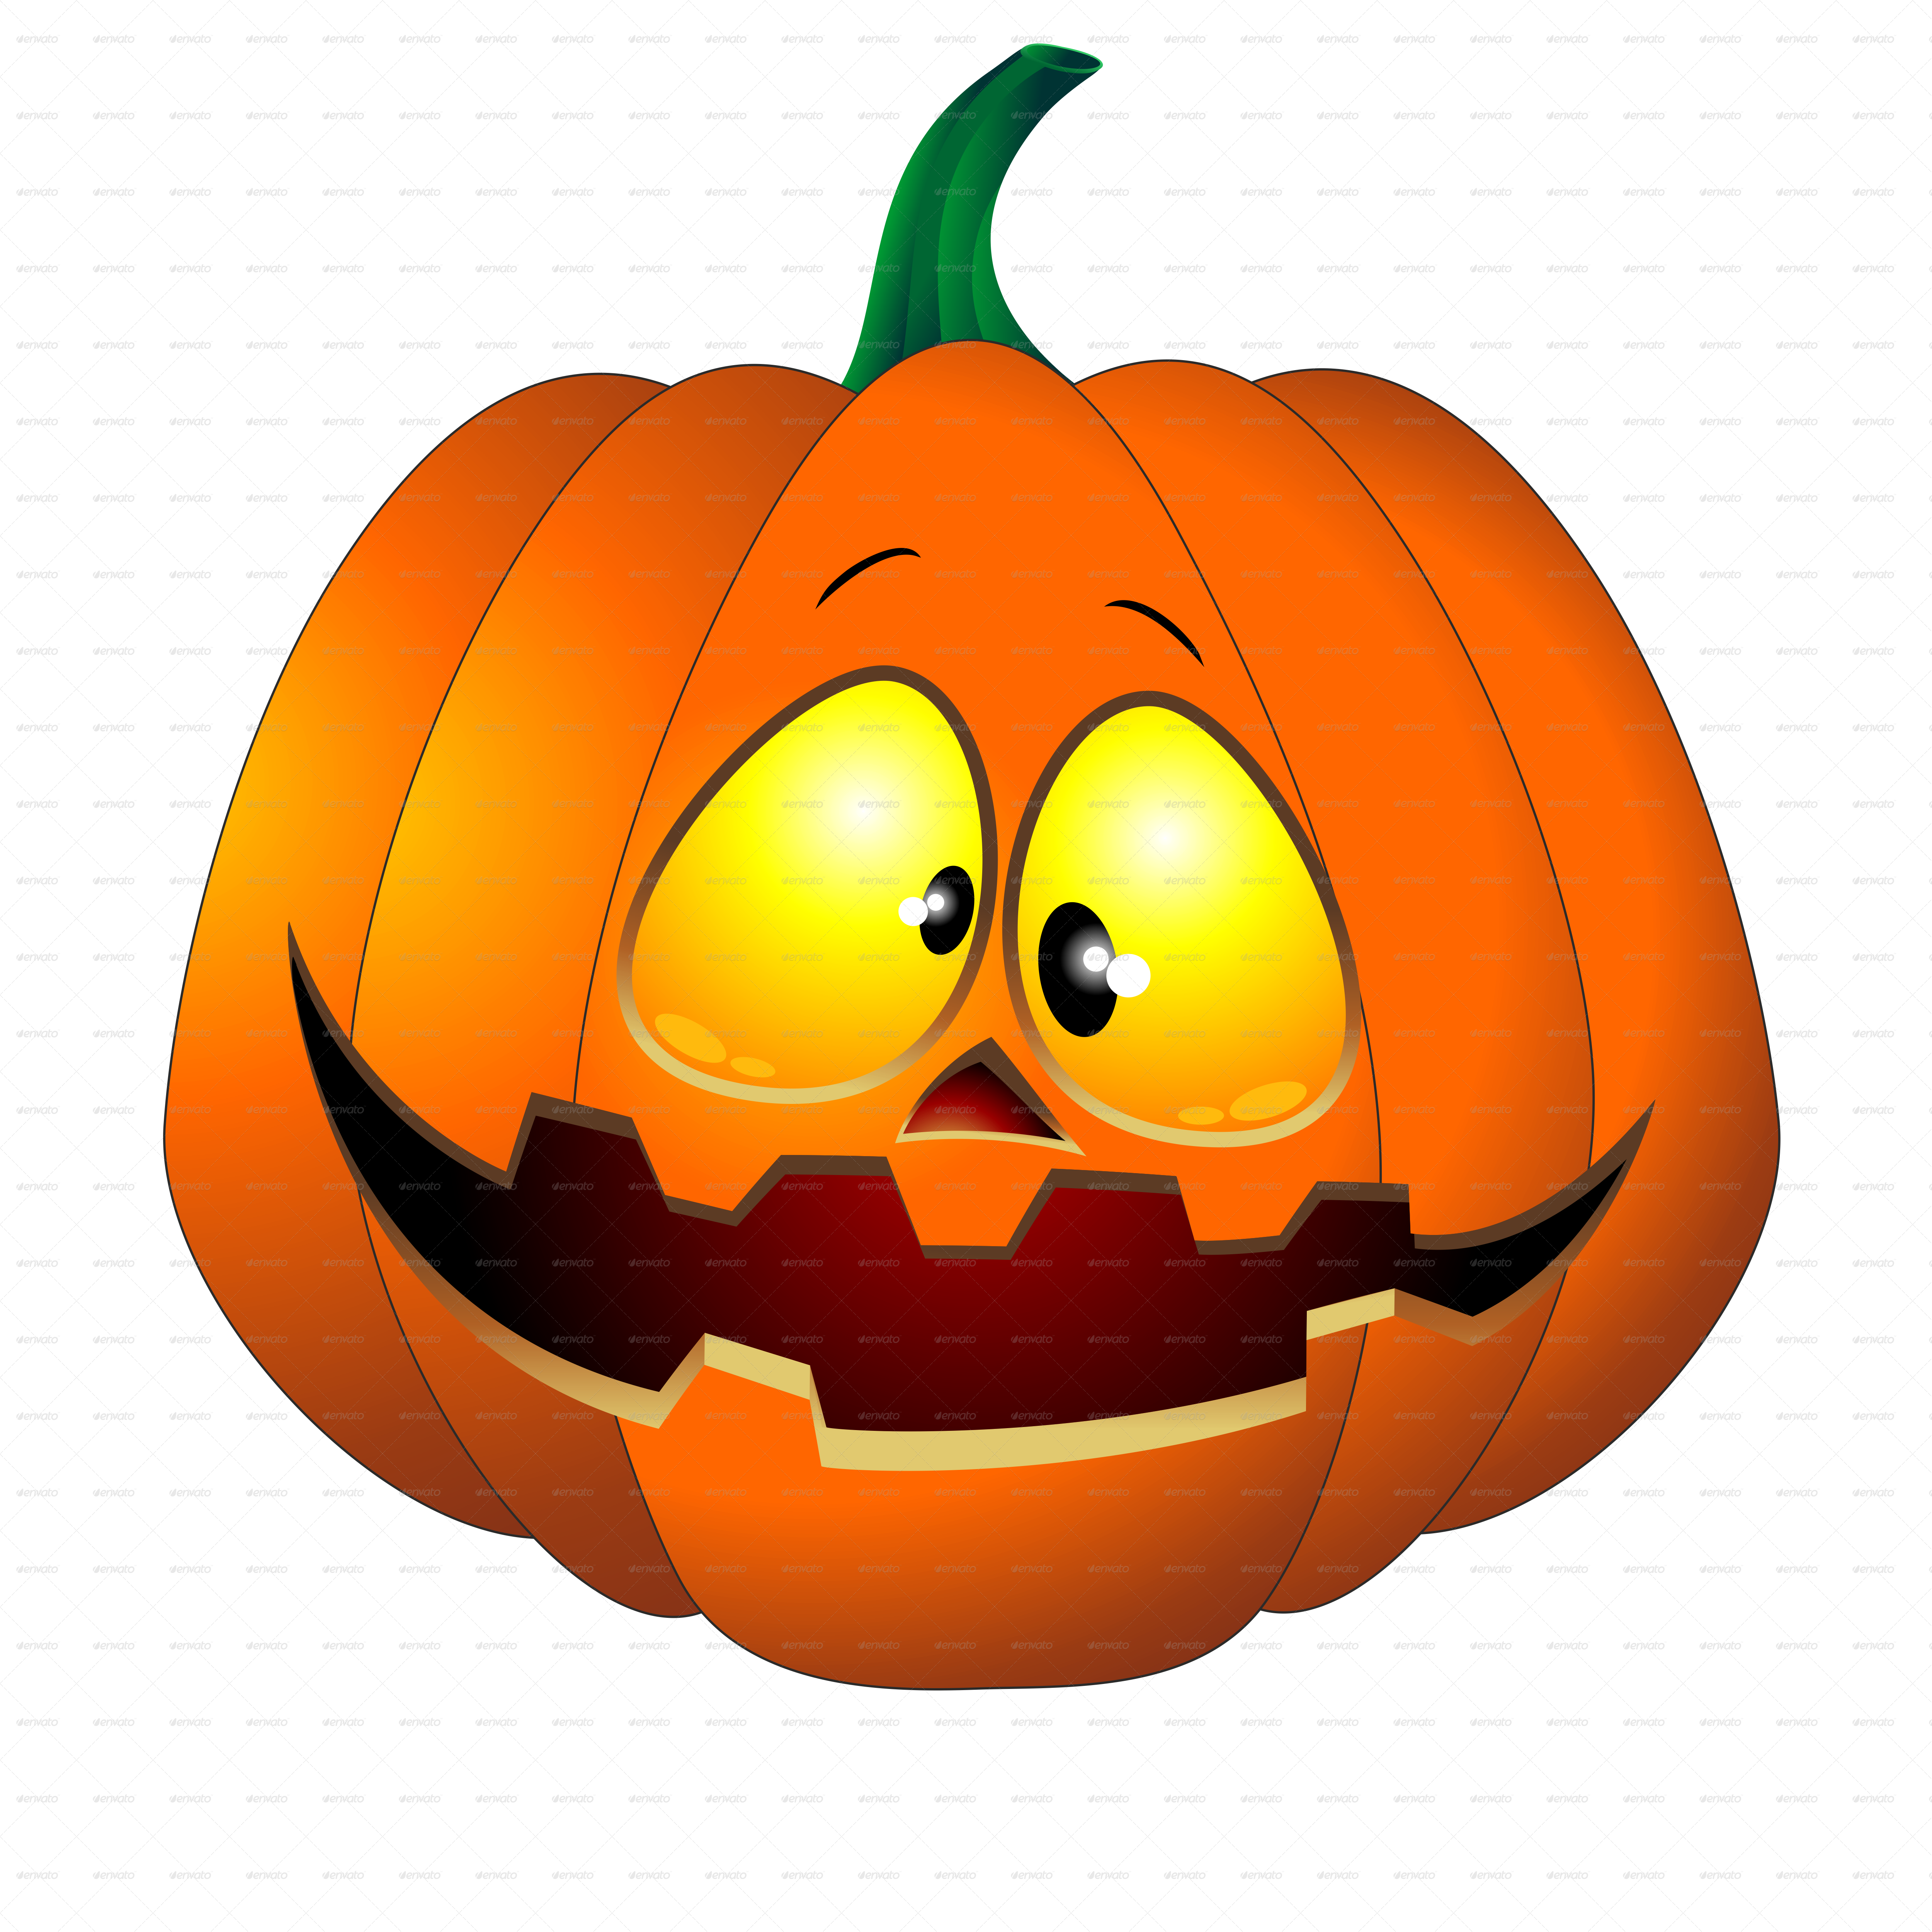 Grinning Pumpkin Halloween Images